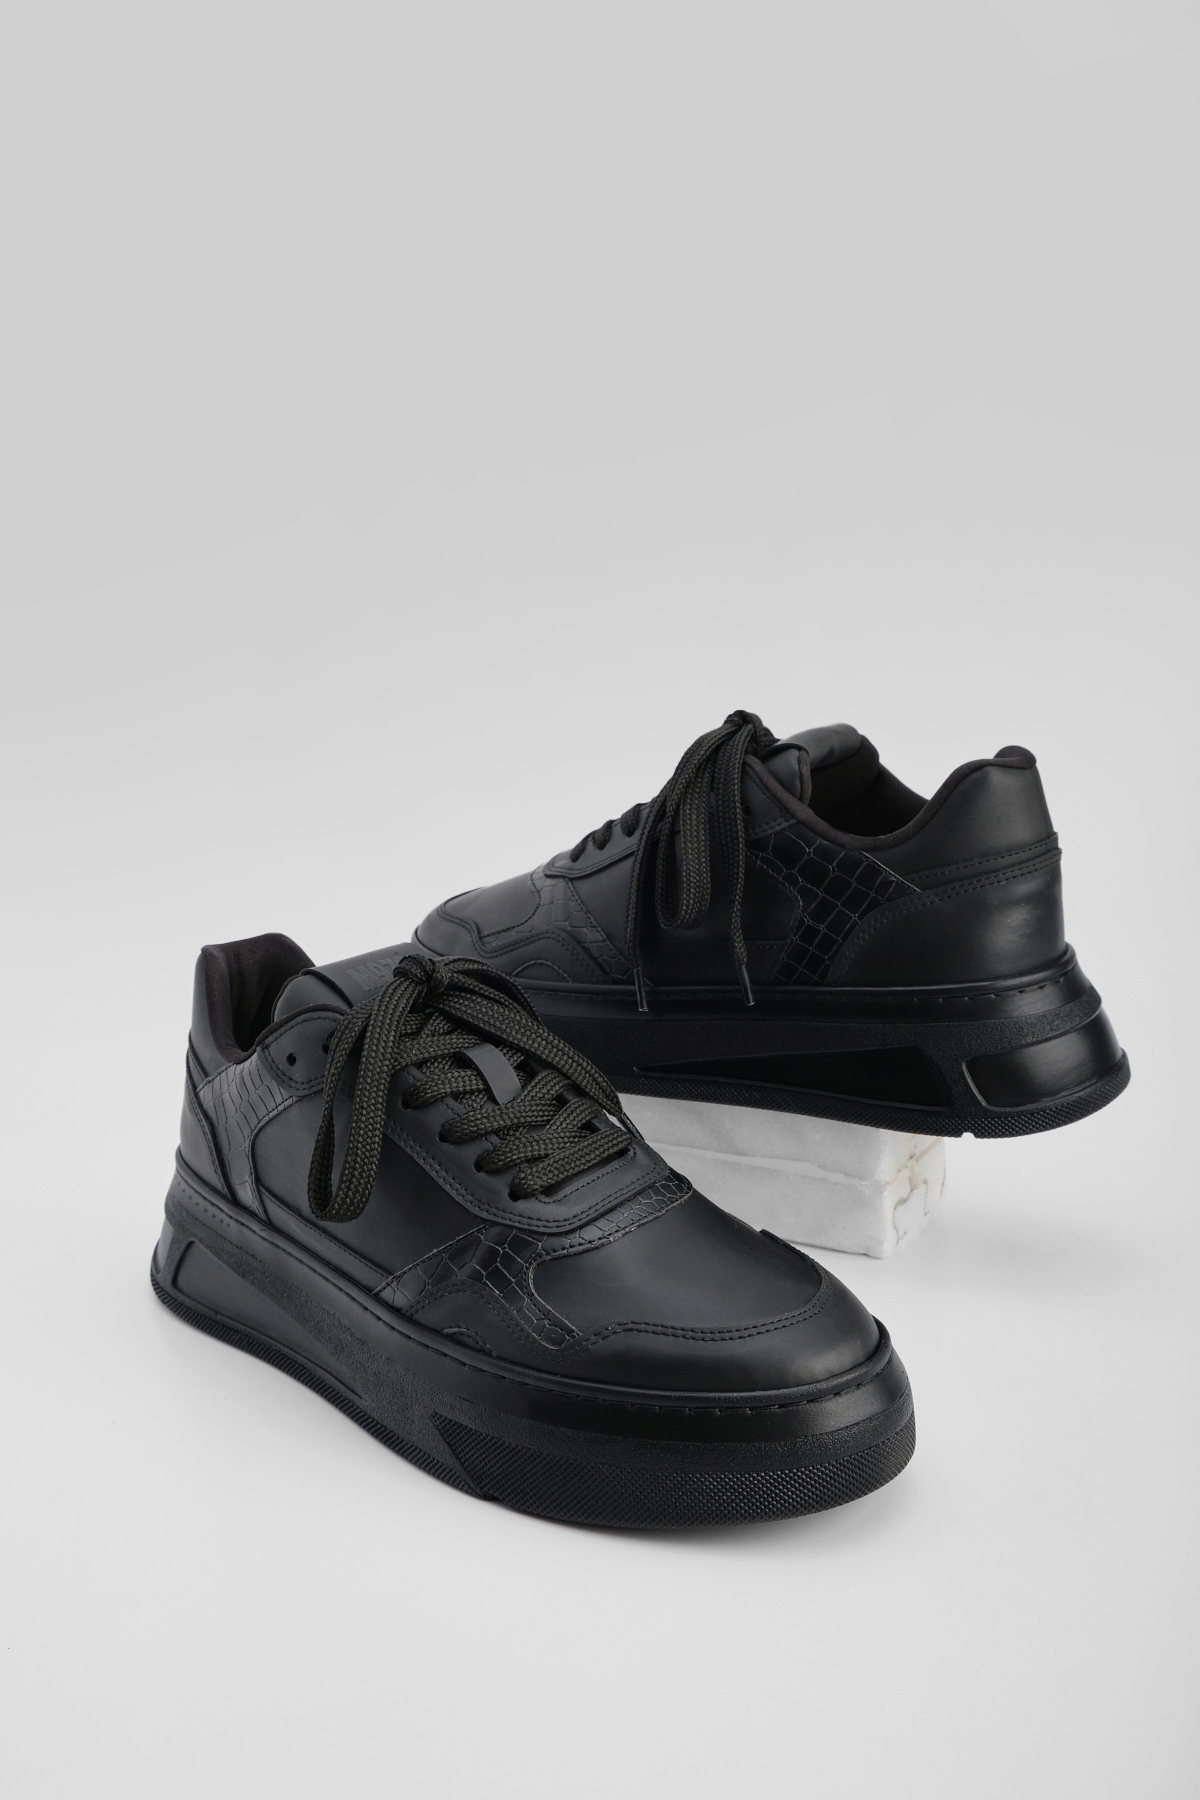 Marjin Men's Sneaker Thick Sole Lace Up Sneakers Terifa Black